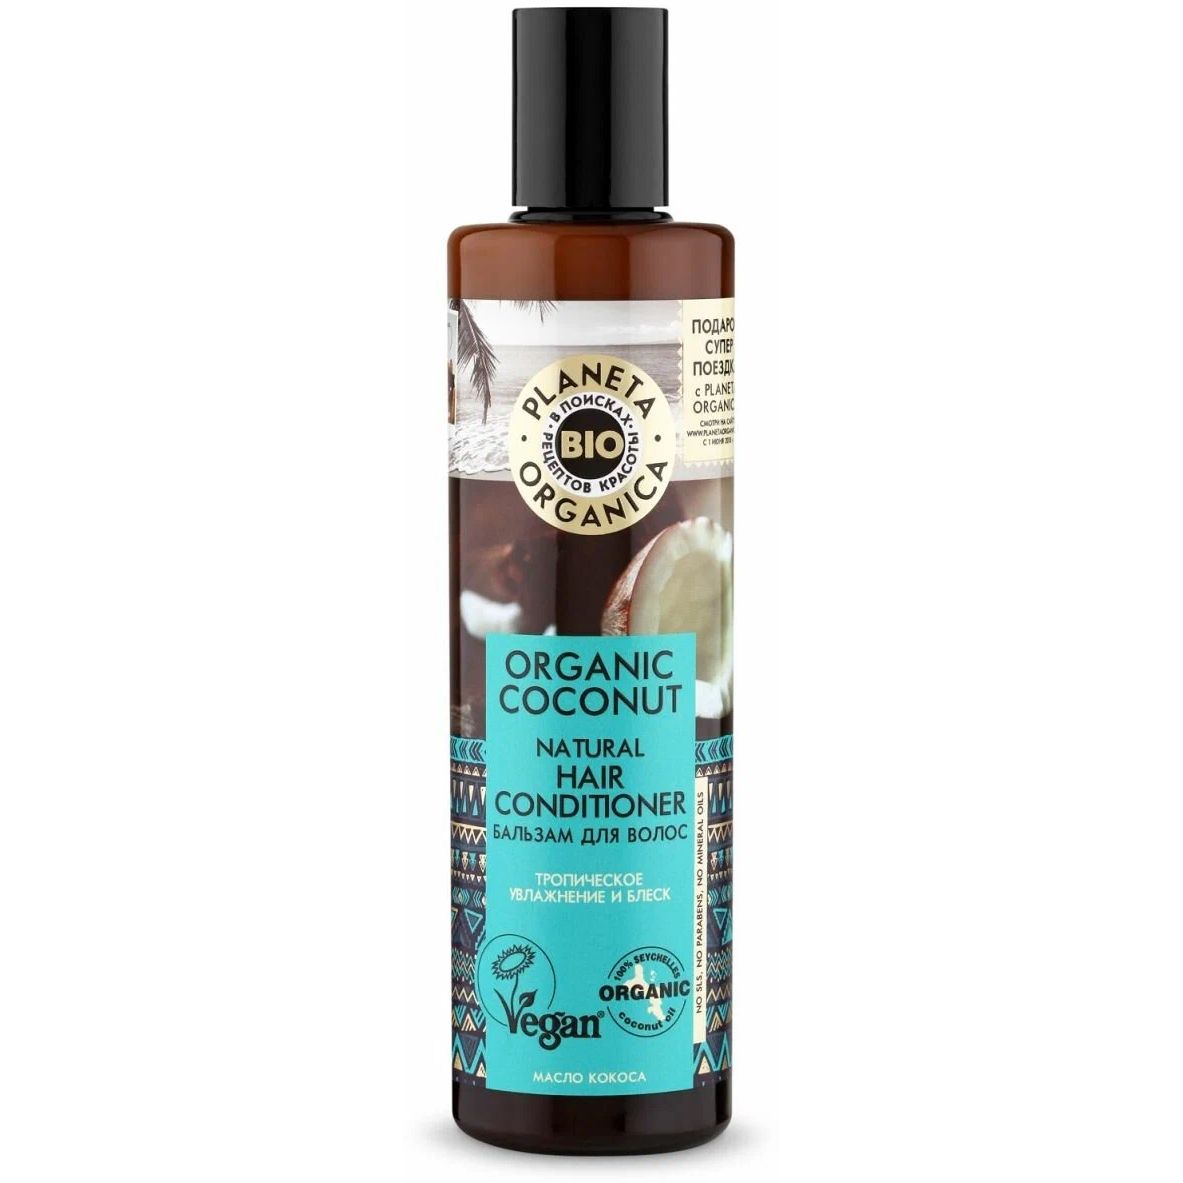 Бальзам для волос PLANETA ORGANICA Organic Coconut увлажнение и блеск, 280 мл блеск для губ iscream gummy bears тон 01 coconut